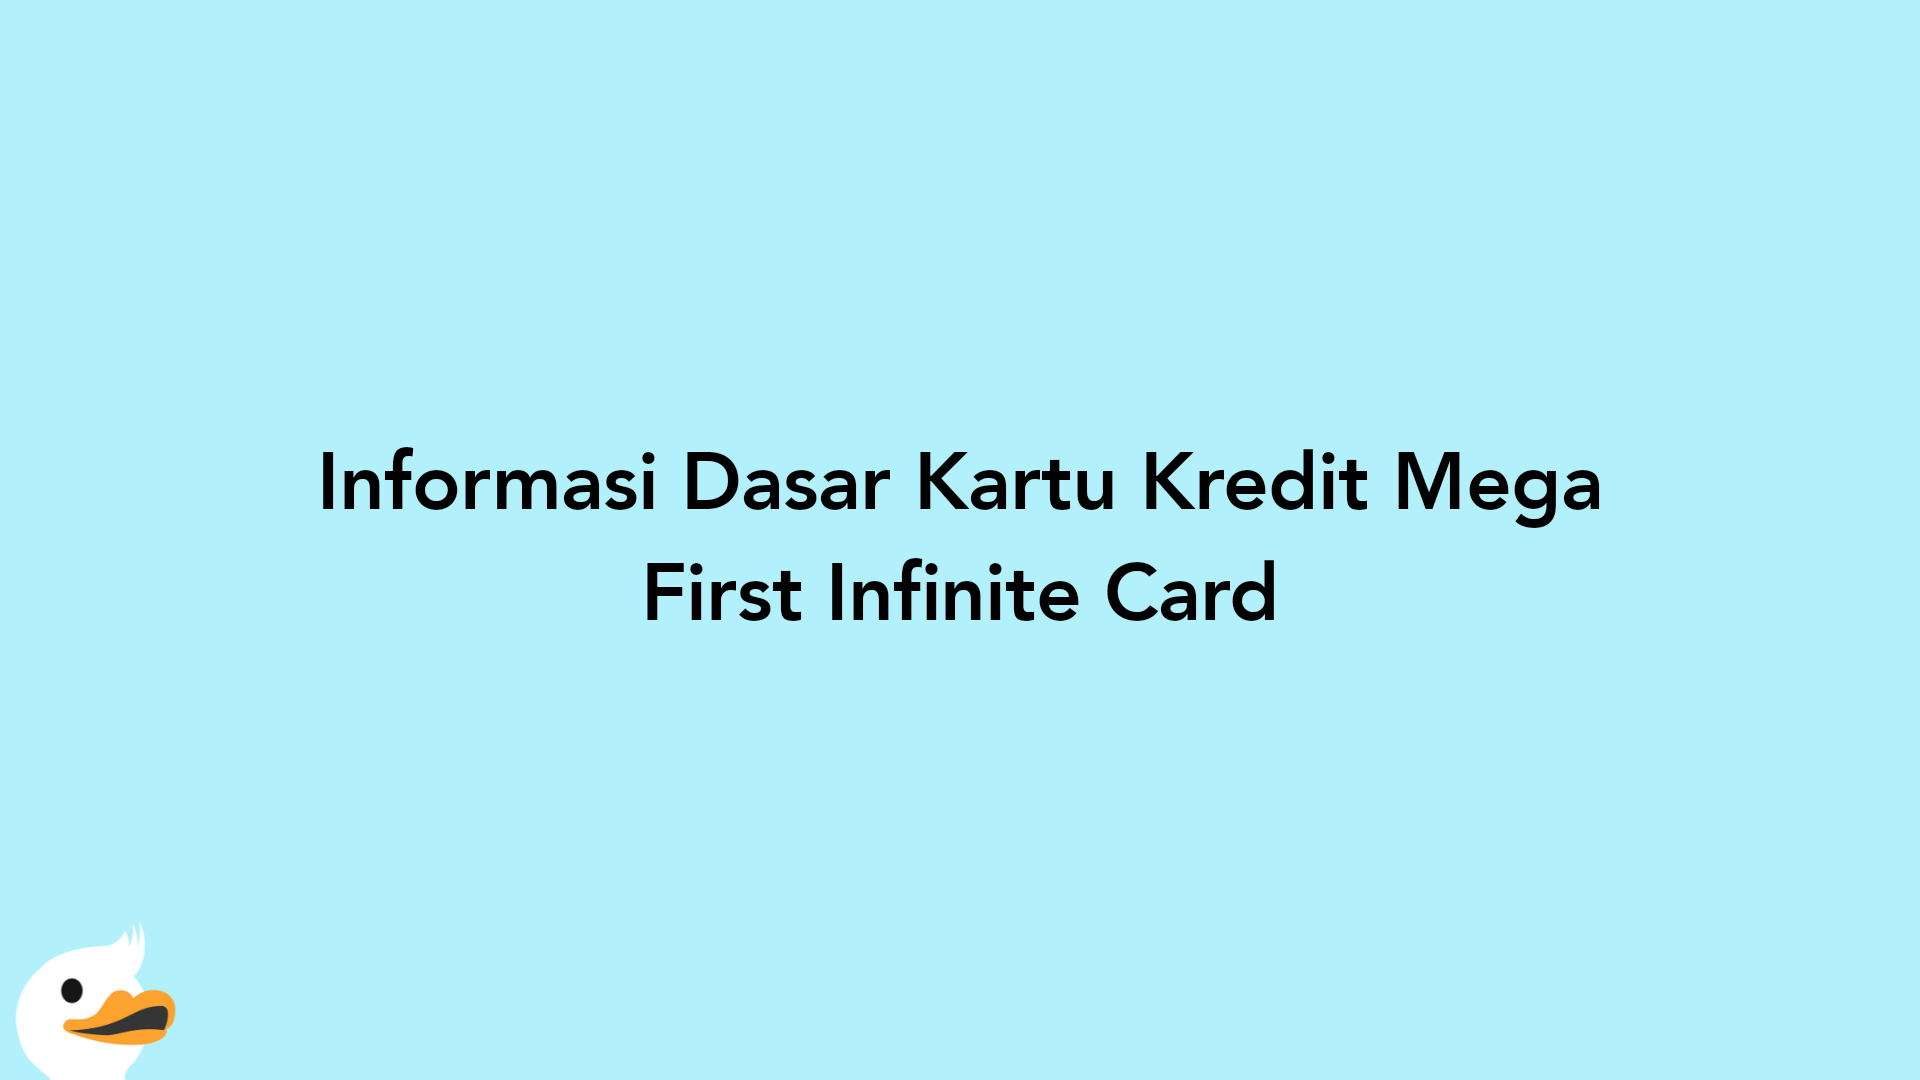 Informasi Dasar Kartu Kredit Mega First Infinite Card